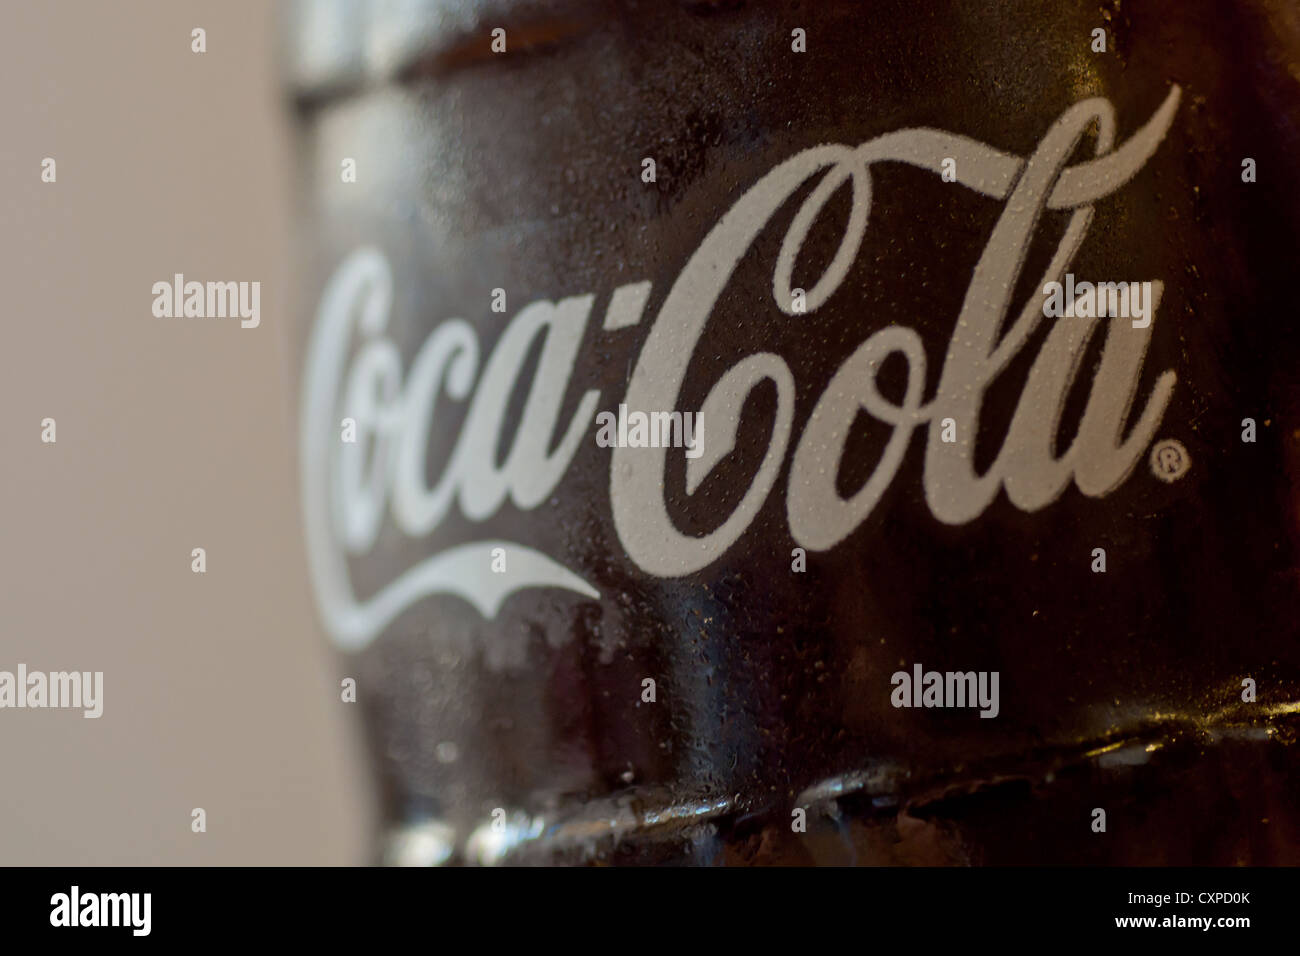 Un gros plan d'une nouvelle bouteille de coke avec le logo Coca Cola. Banque D'Images